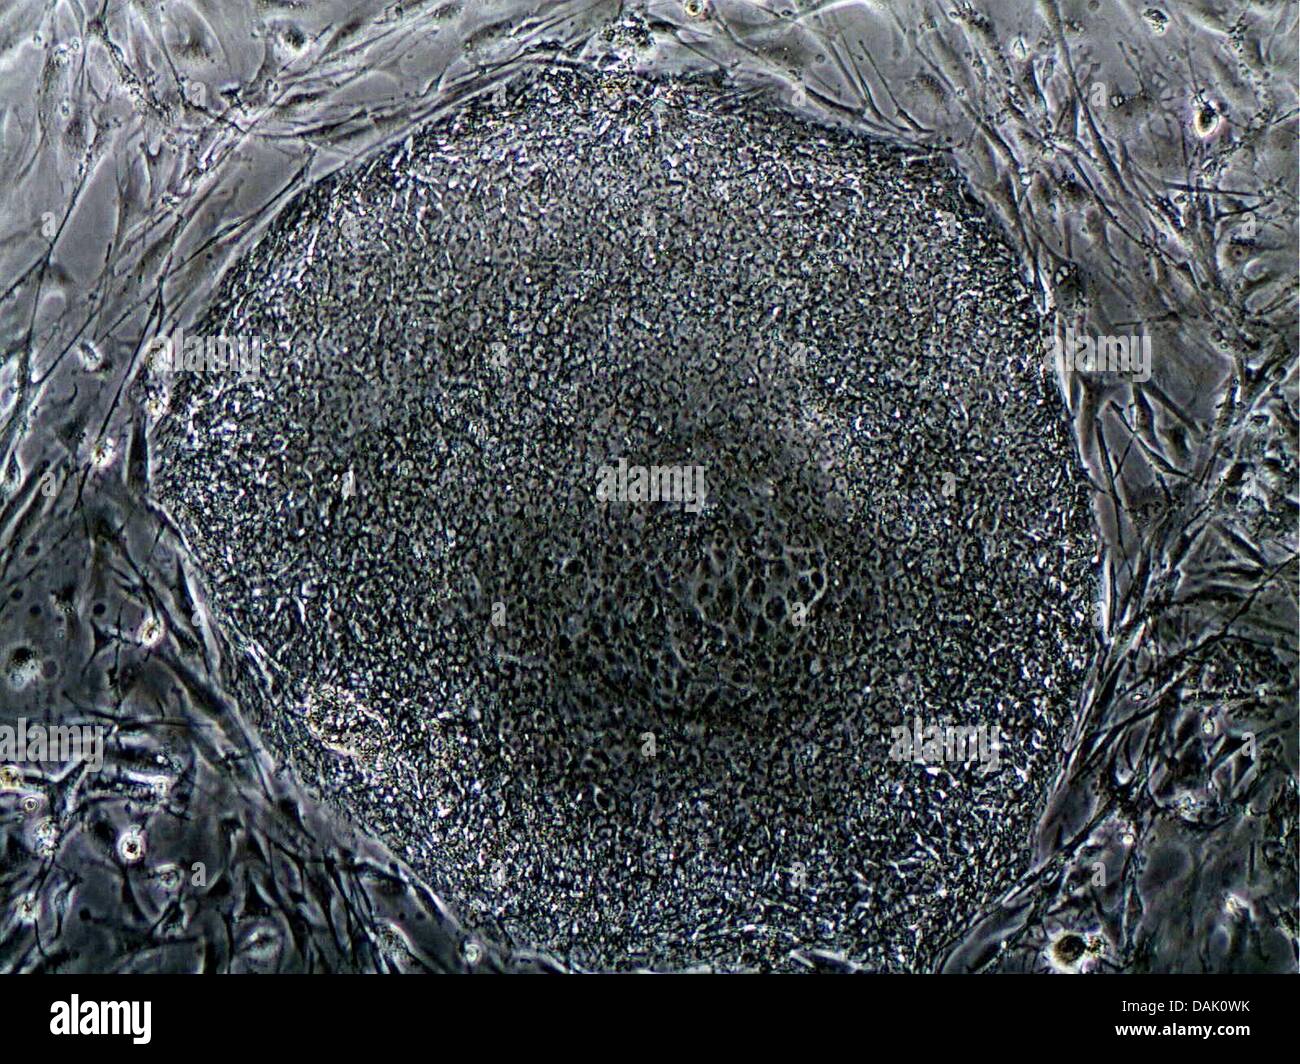 Programa - Un microscopio óptico sin fecha Folleto imagen del Instituto Max Planck de Biomedicina Molecular muestra una colonia de reprogramar células pluripotentes inducidas, células madre humanas en Muenster, Alemania. Numerosos científicos en el instituto de la Universidad de Münster están involucradas en la investigación con células madre. Foto: Mpi Muenster Foto de stock